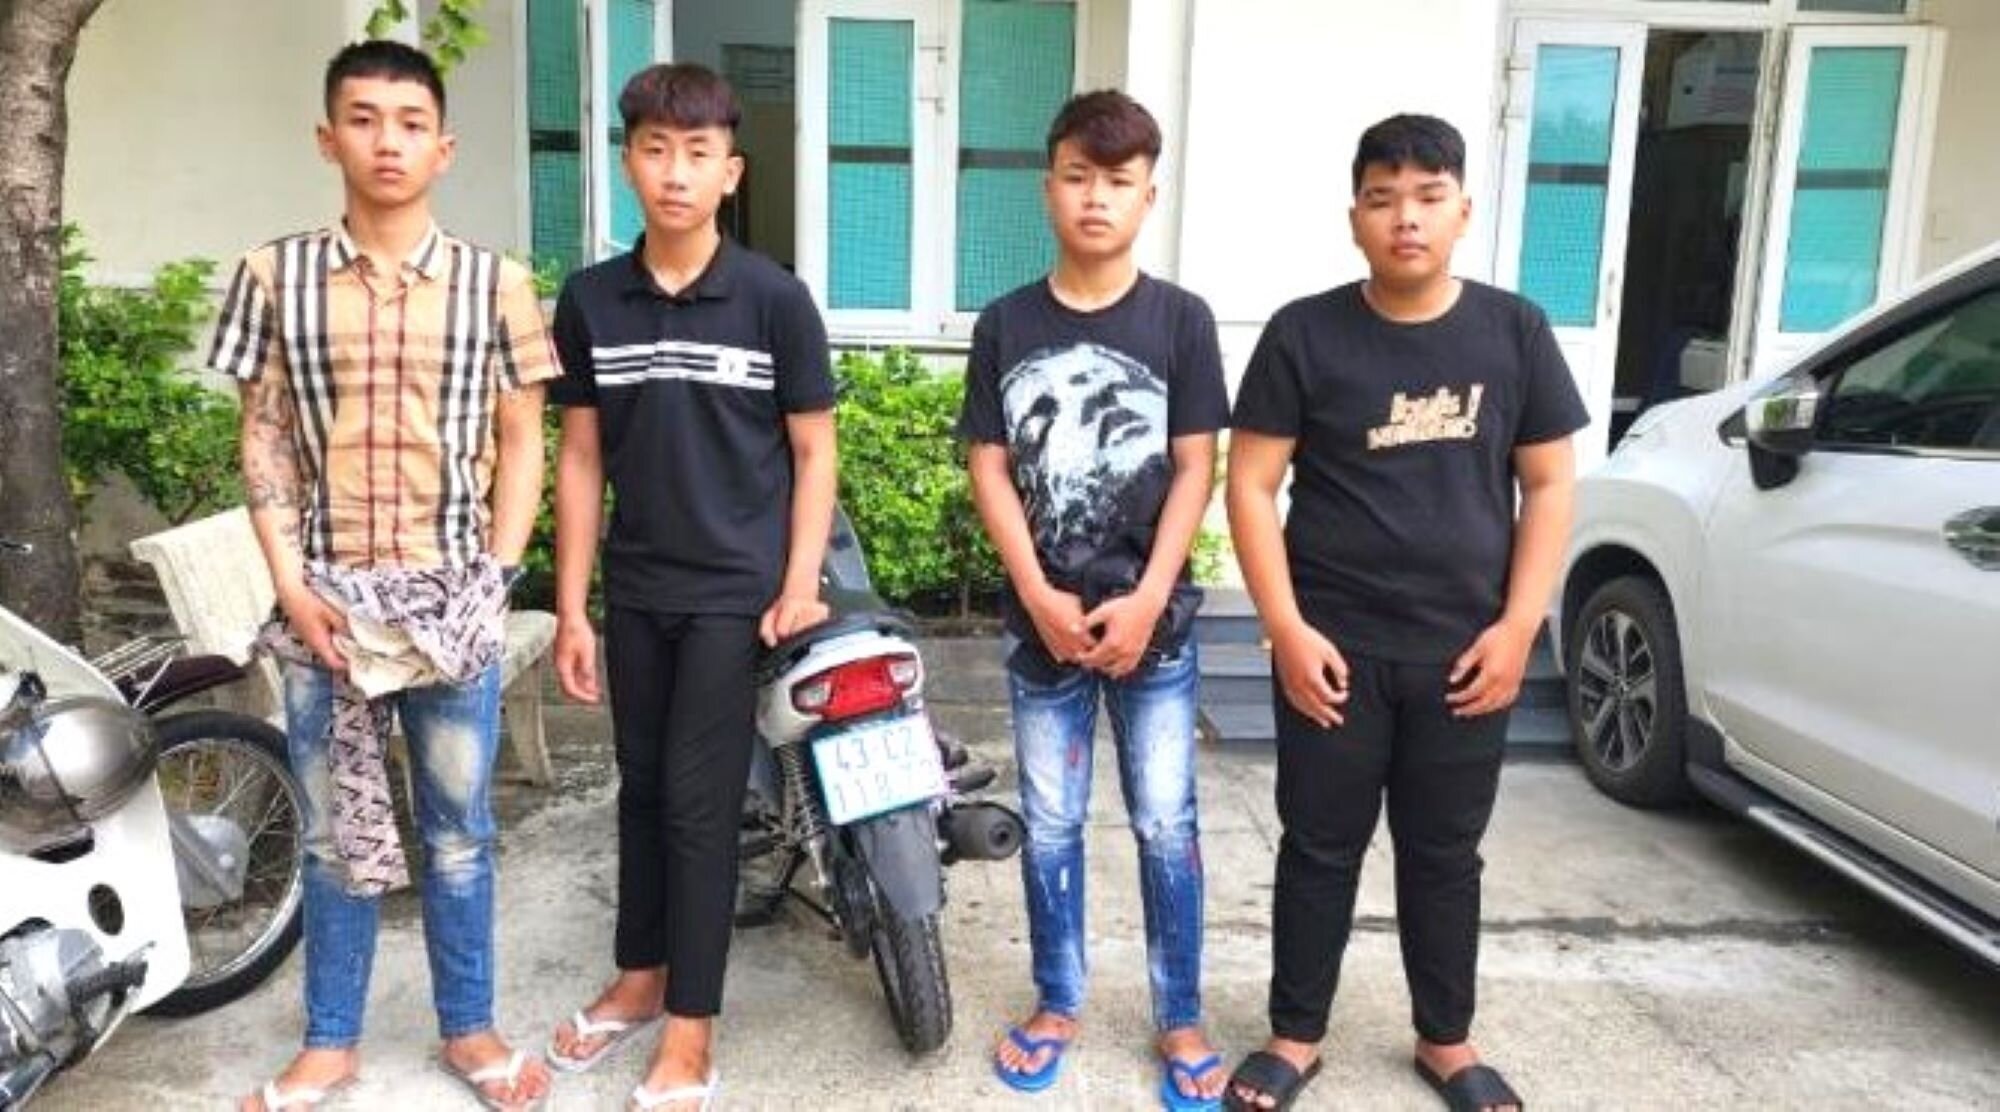 Truy bắt nhóm thanh thiếu niên đánh người dã man giữa trung tâm Đà Nẵng - 1